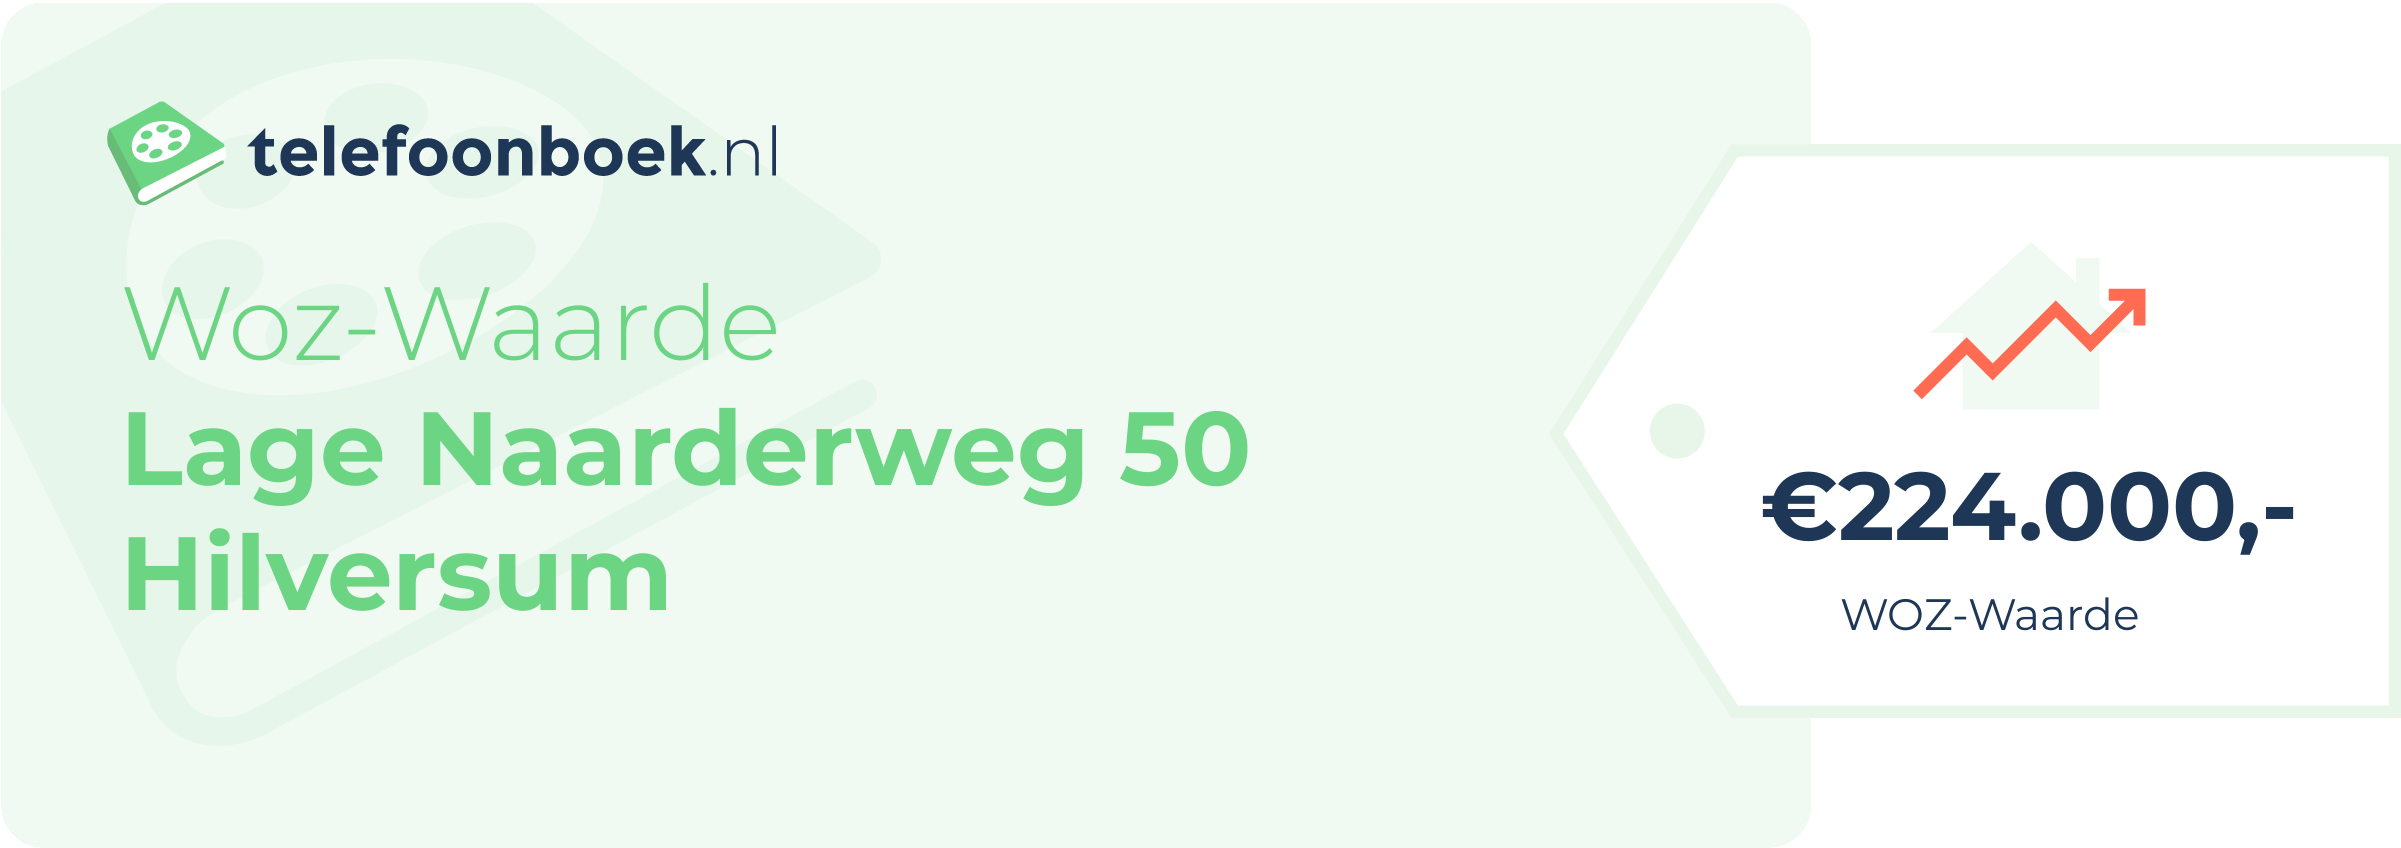 WOZ-waarde Lage Naarderweg 50 Hilversum